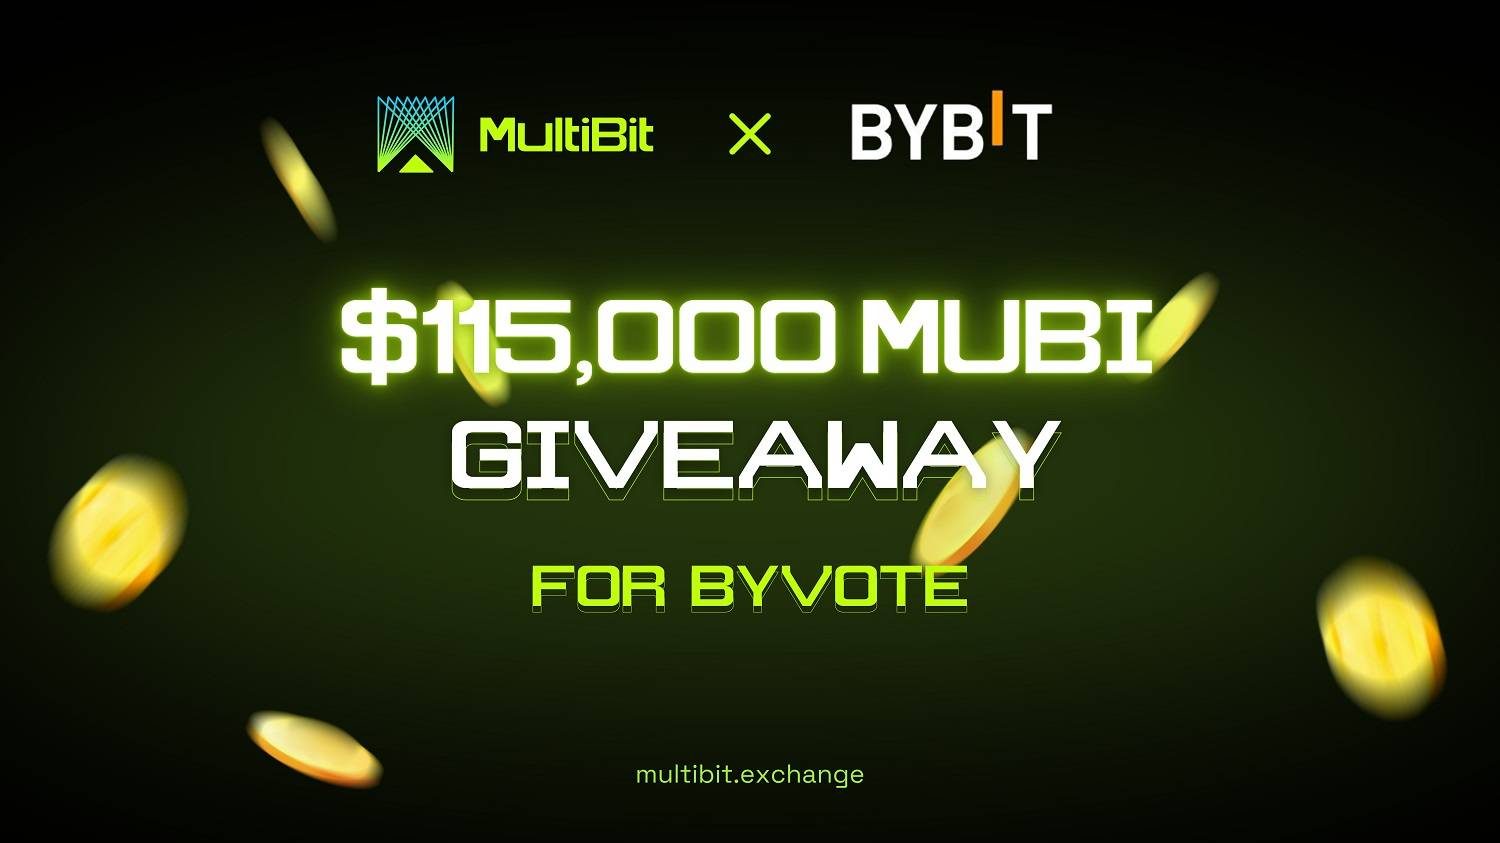 Tham dự chiến dịch Bybit niêm yết Multibit và có cơ hội nhận giải thưởng lên đến 115.000 USD